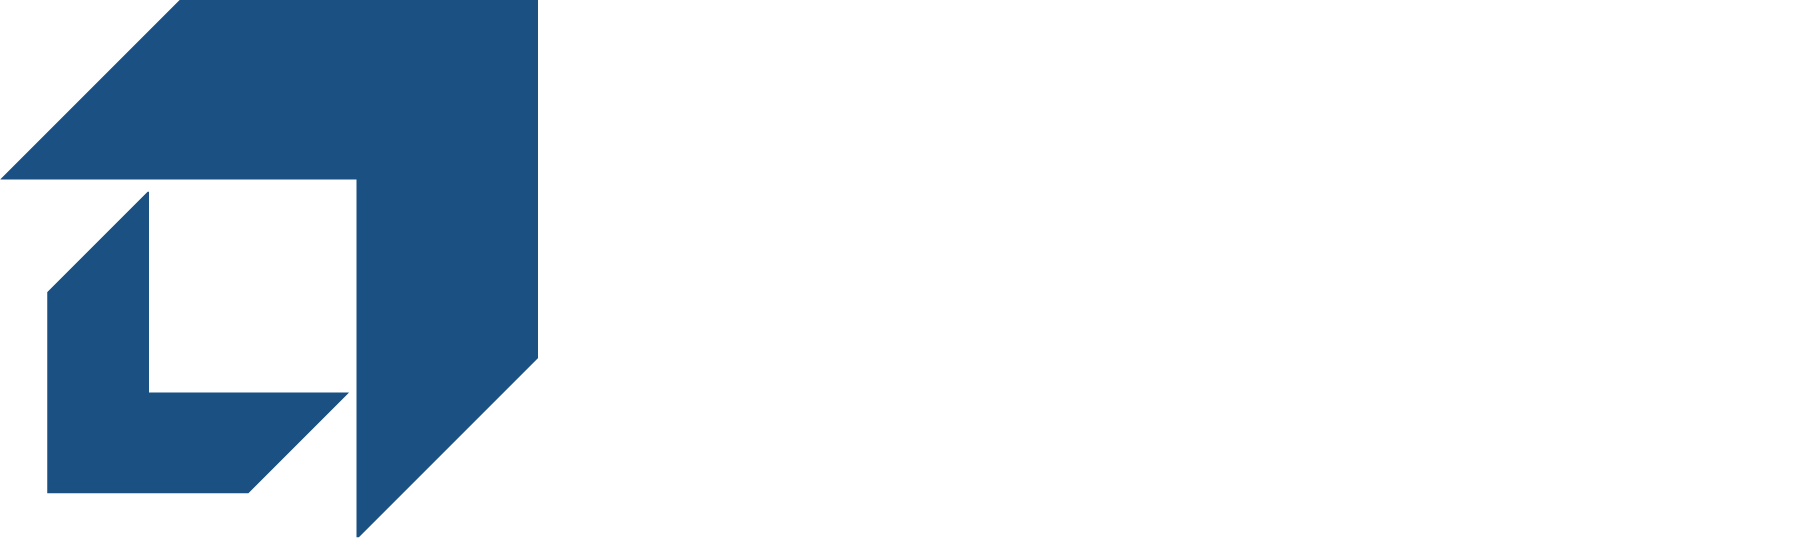 Castro & Partners